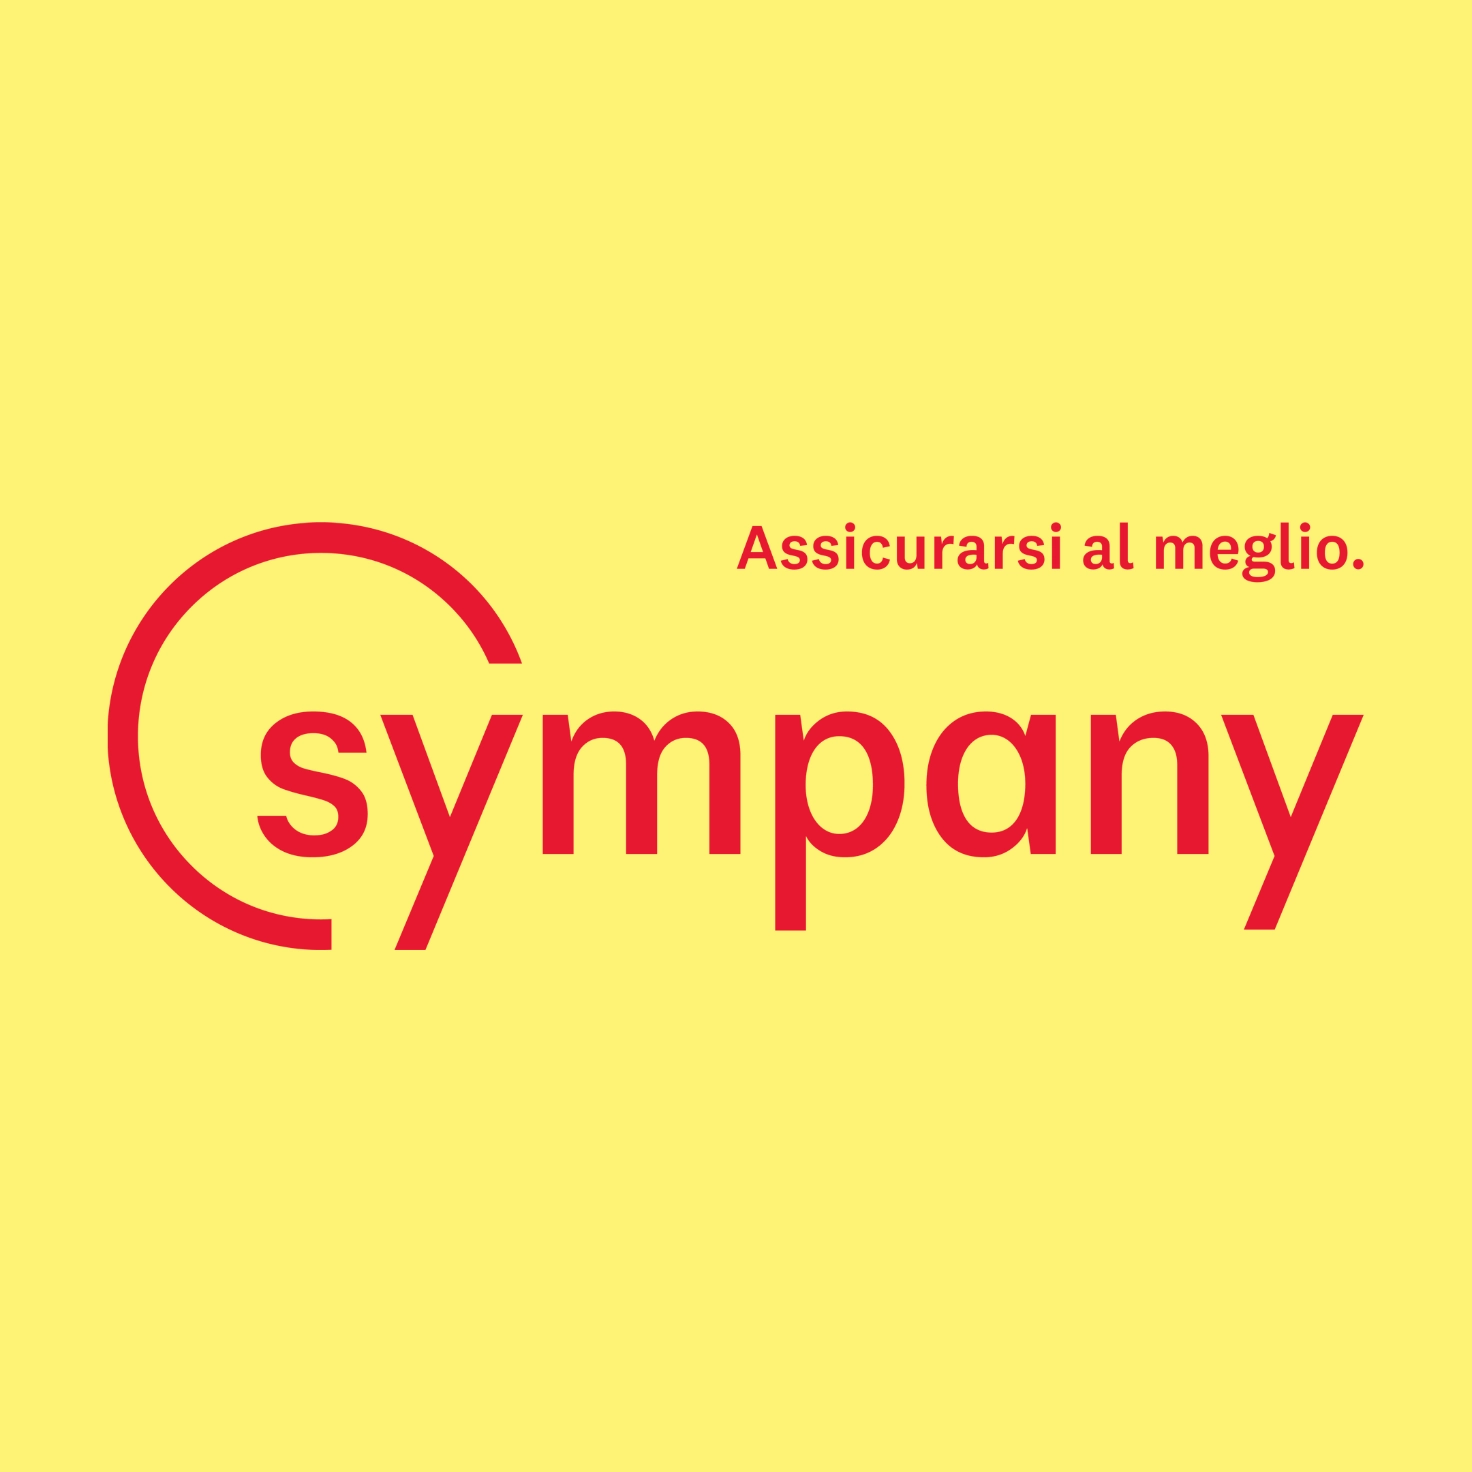 Logo dell'assicuratore Sympany con il claim "Assicurarsi al meglio"